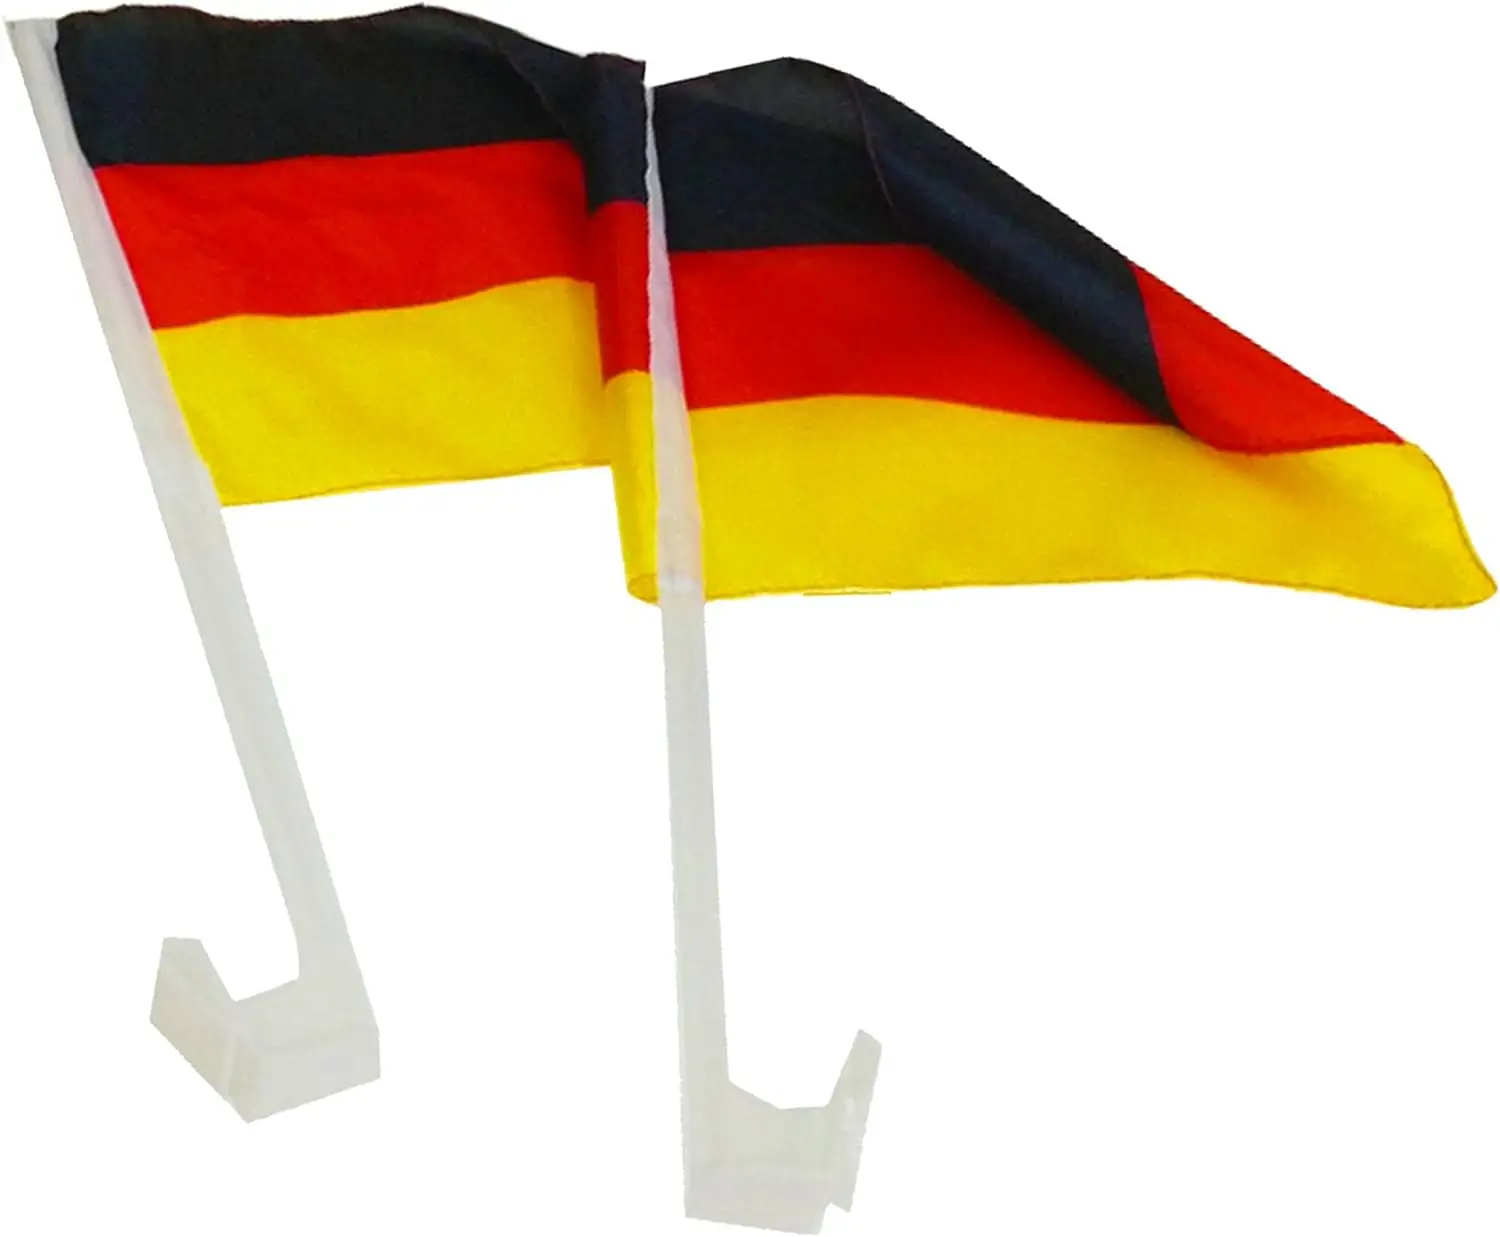 דגלי רכב גרמניה כדורגל אליפות אירופה דגל מדינה פריט אוהד עם ידית פלסטיק